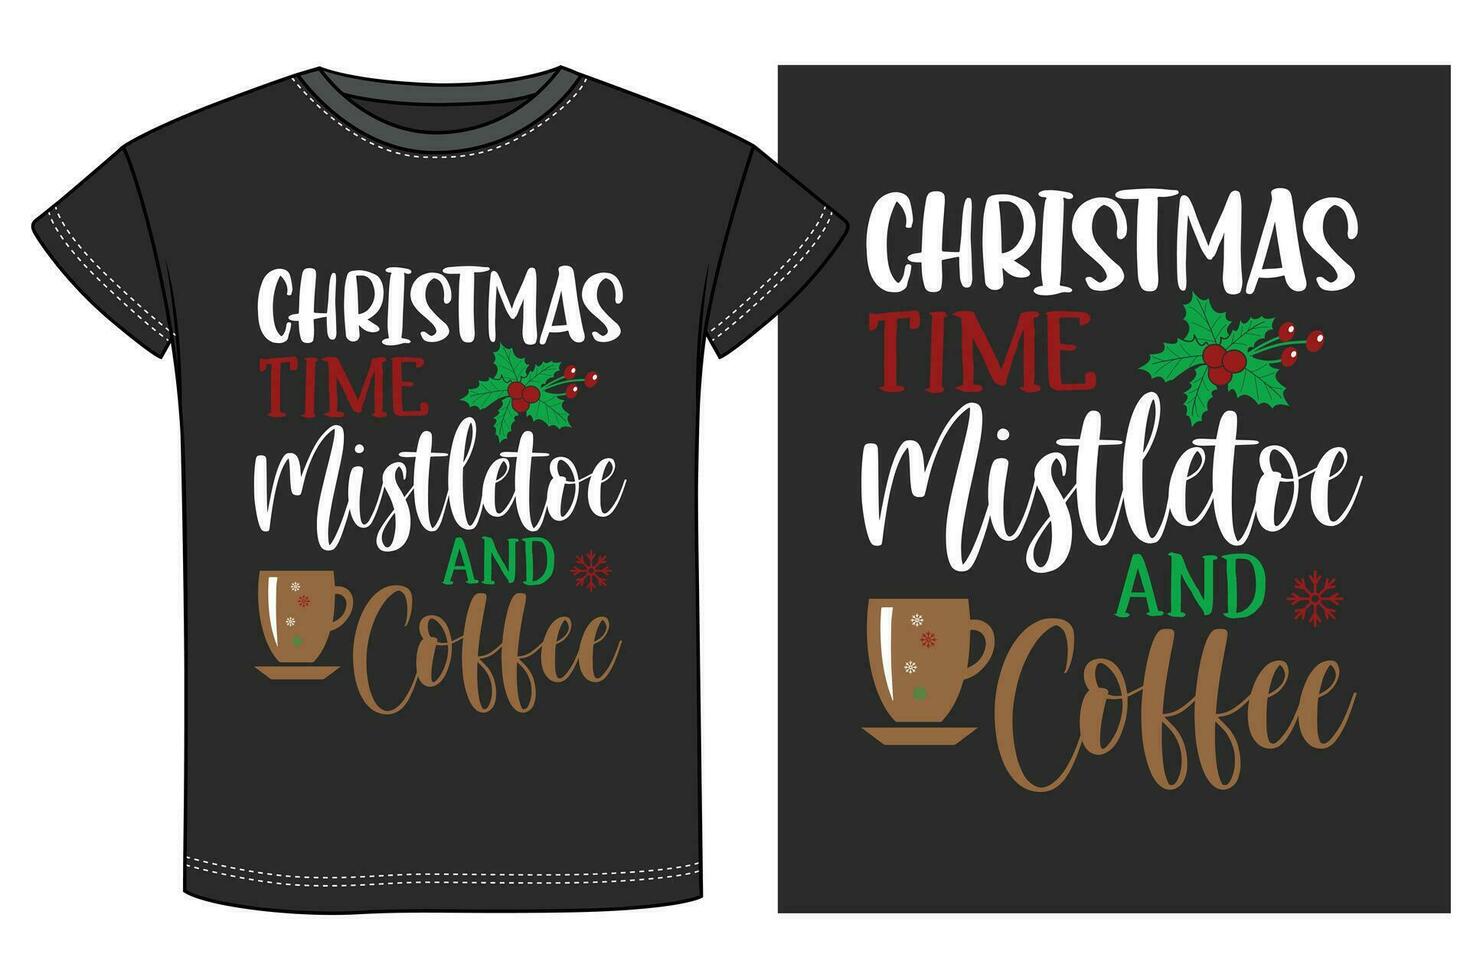 Navidad Bebiendo fiesta camiseta diseño vector